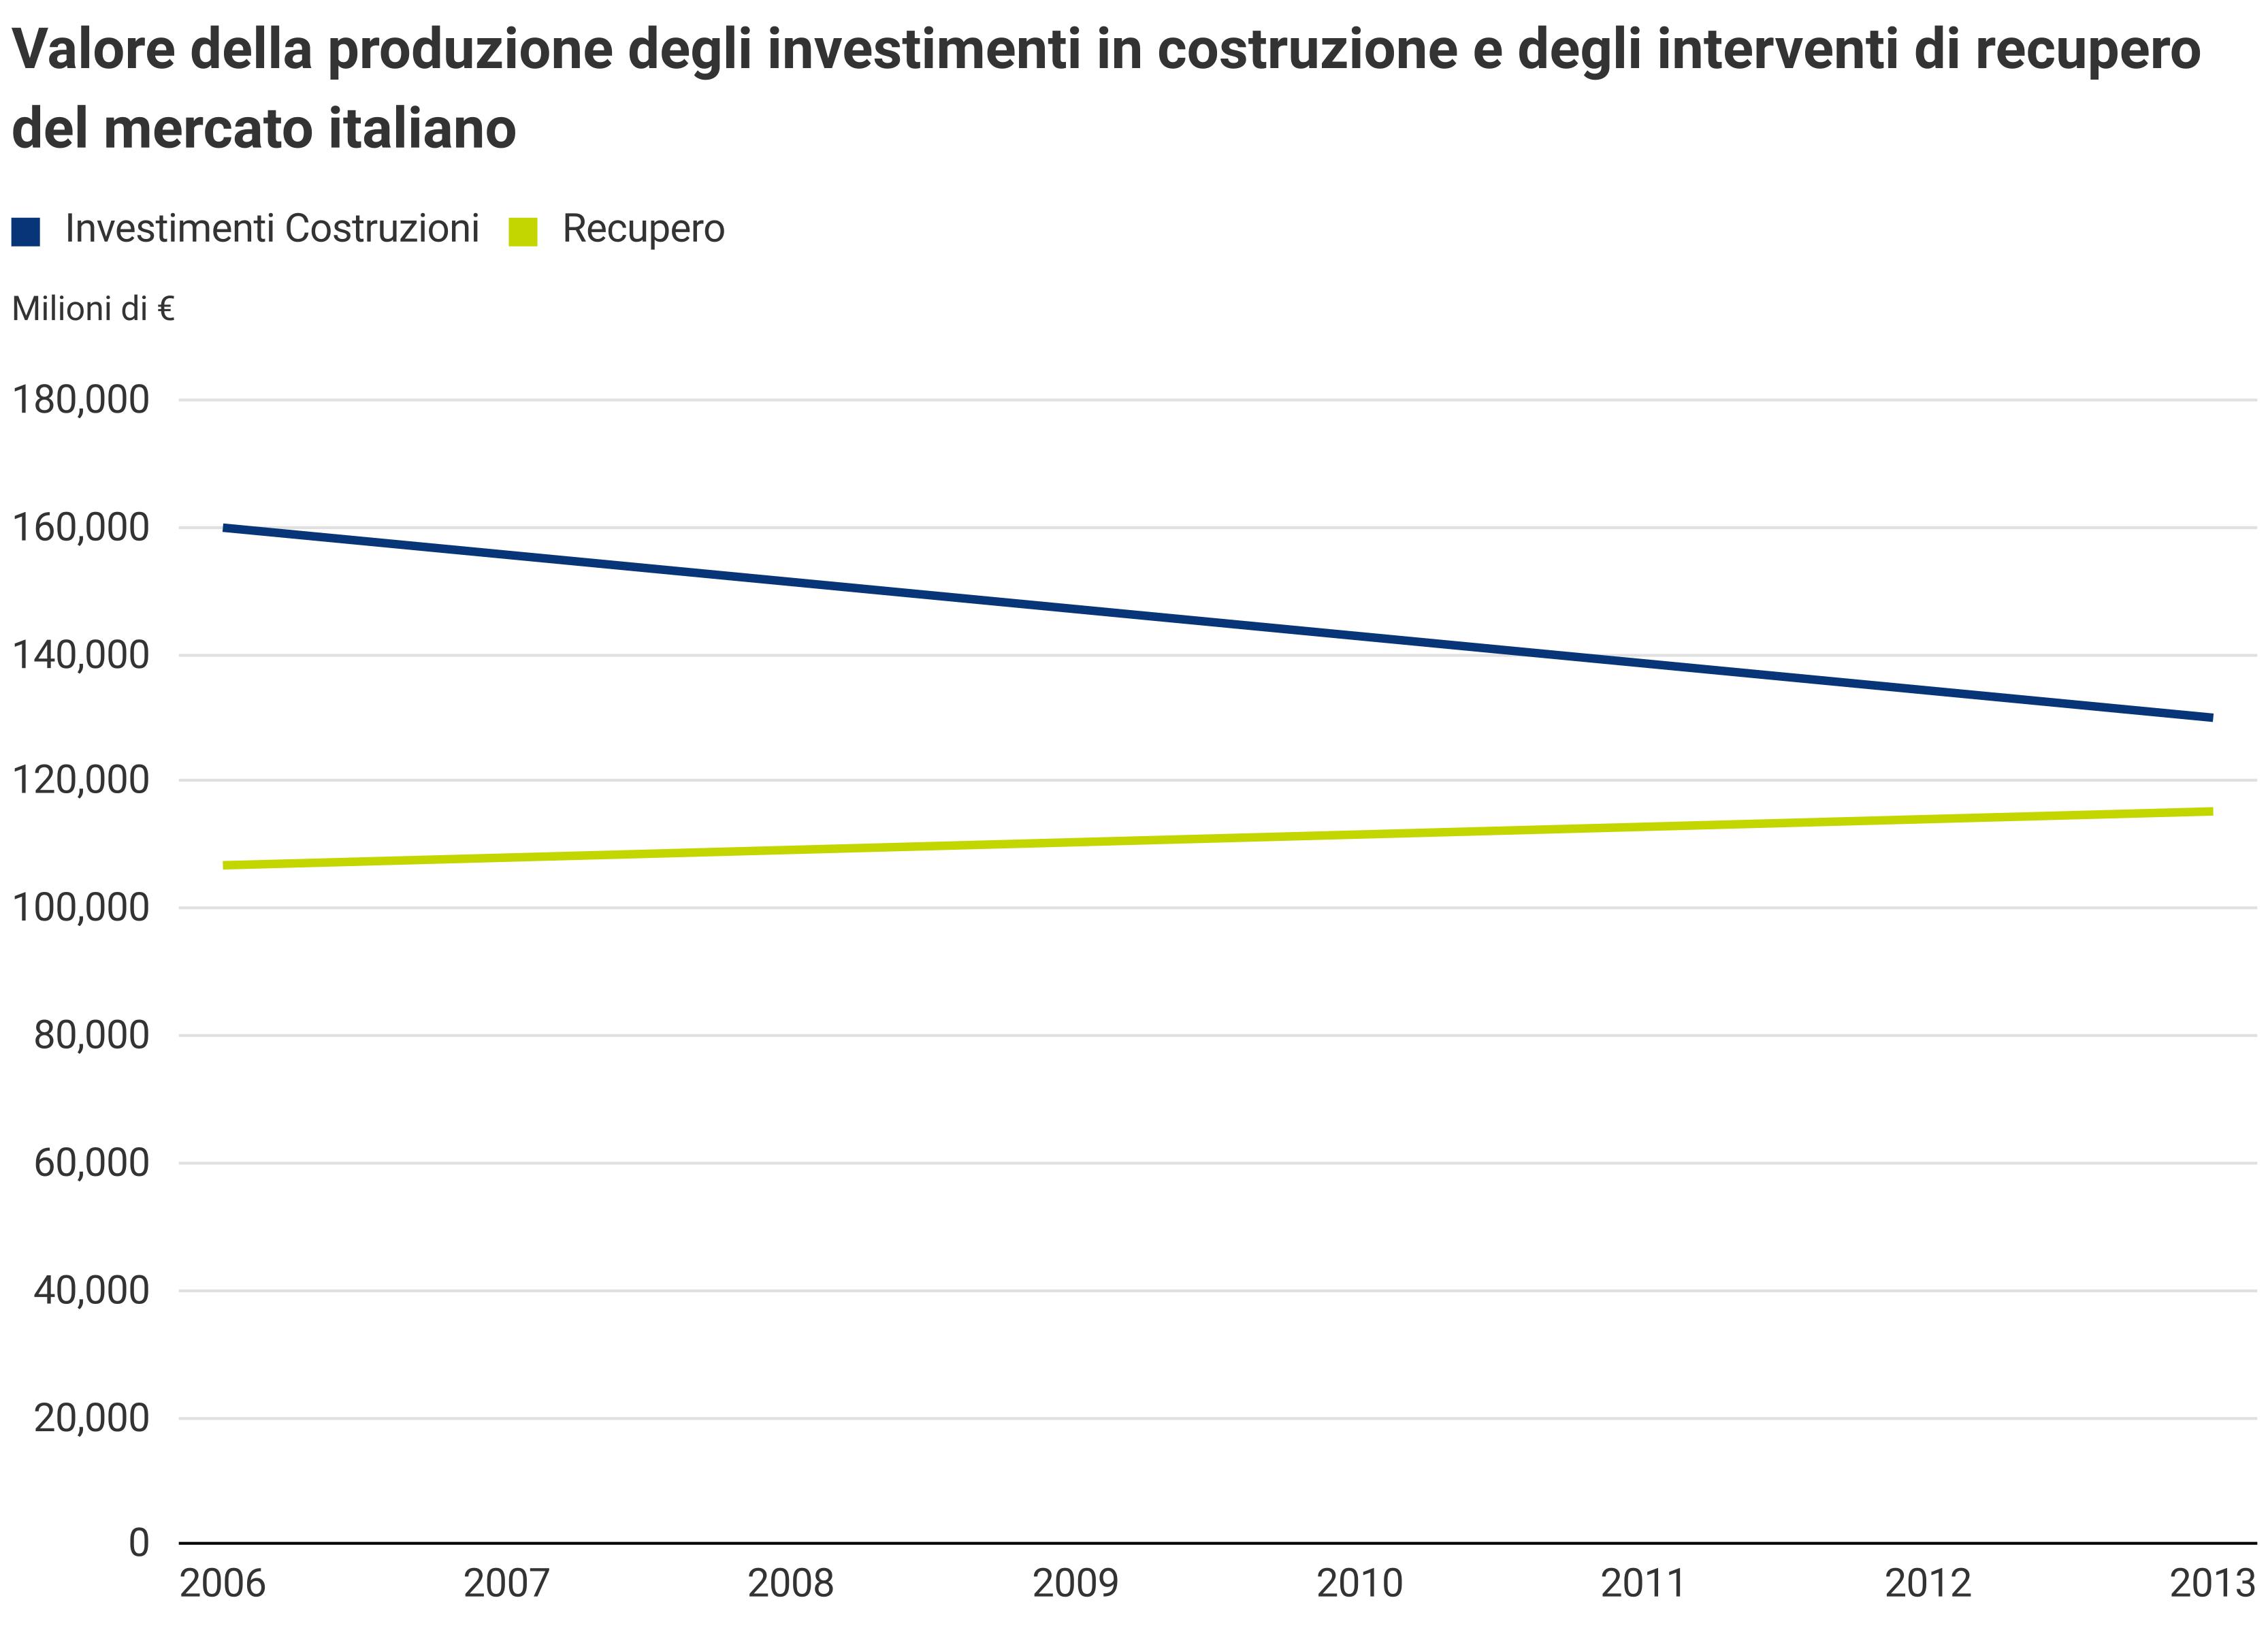 Valore produzione investimenti in costruzione e interventi di recupero in Italia